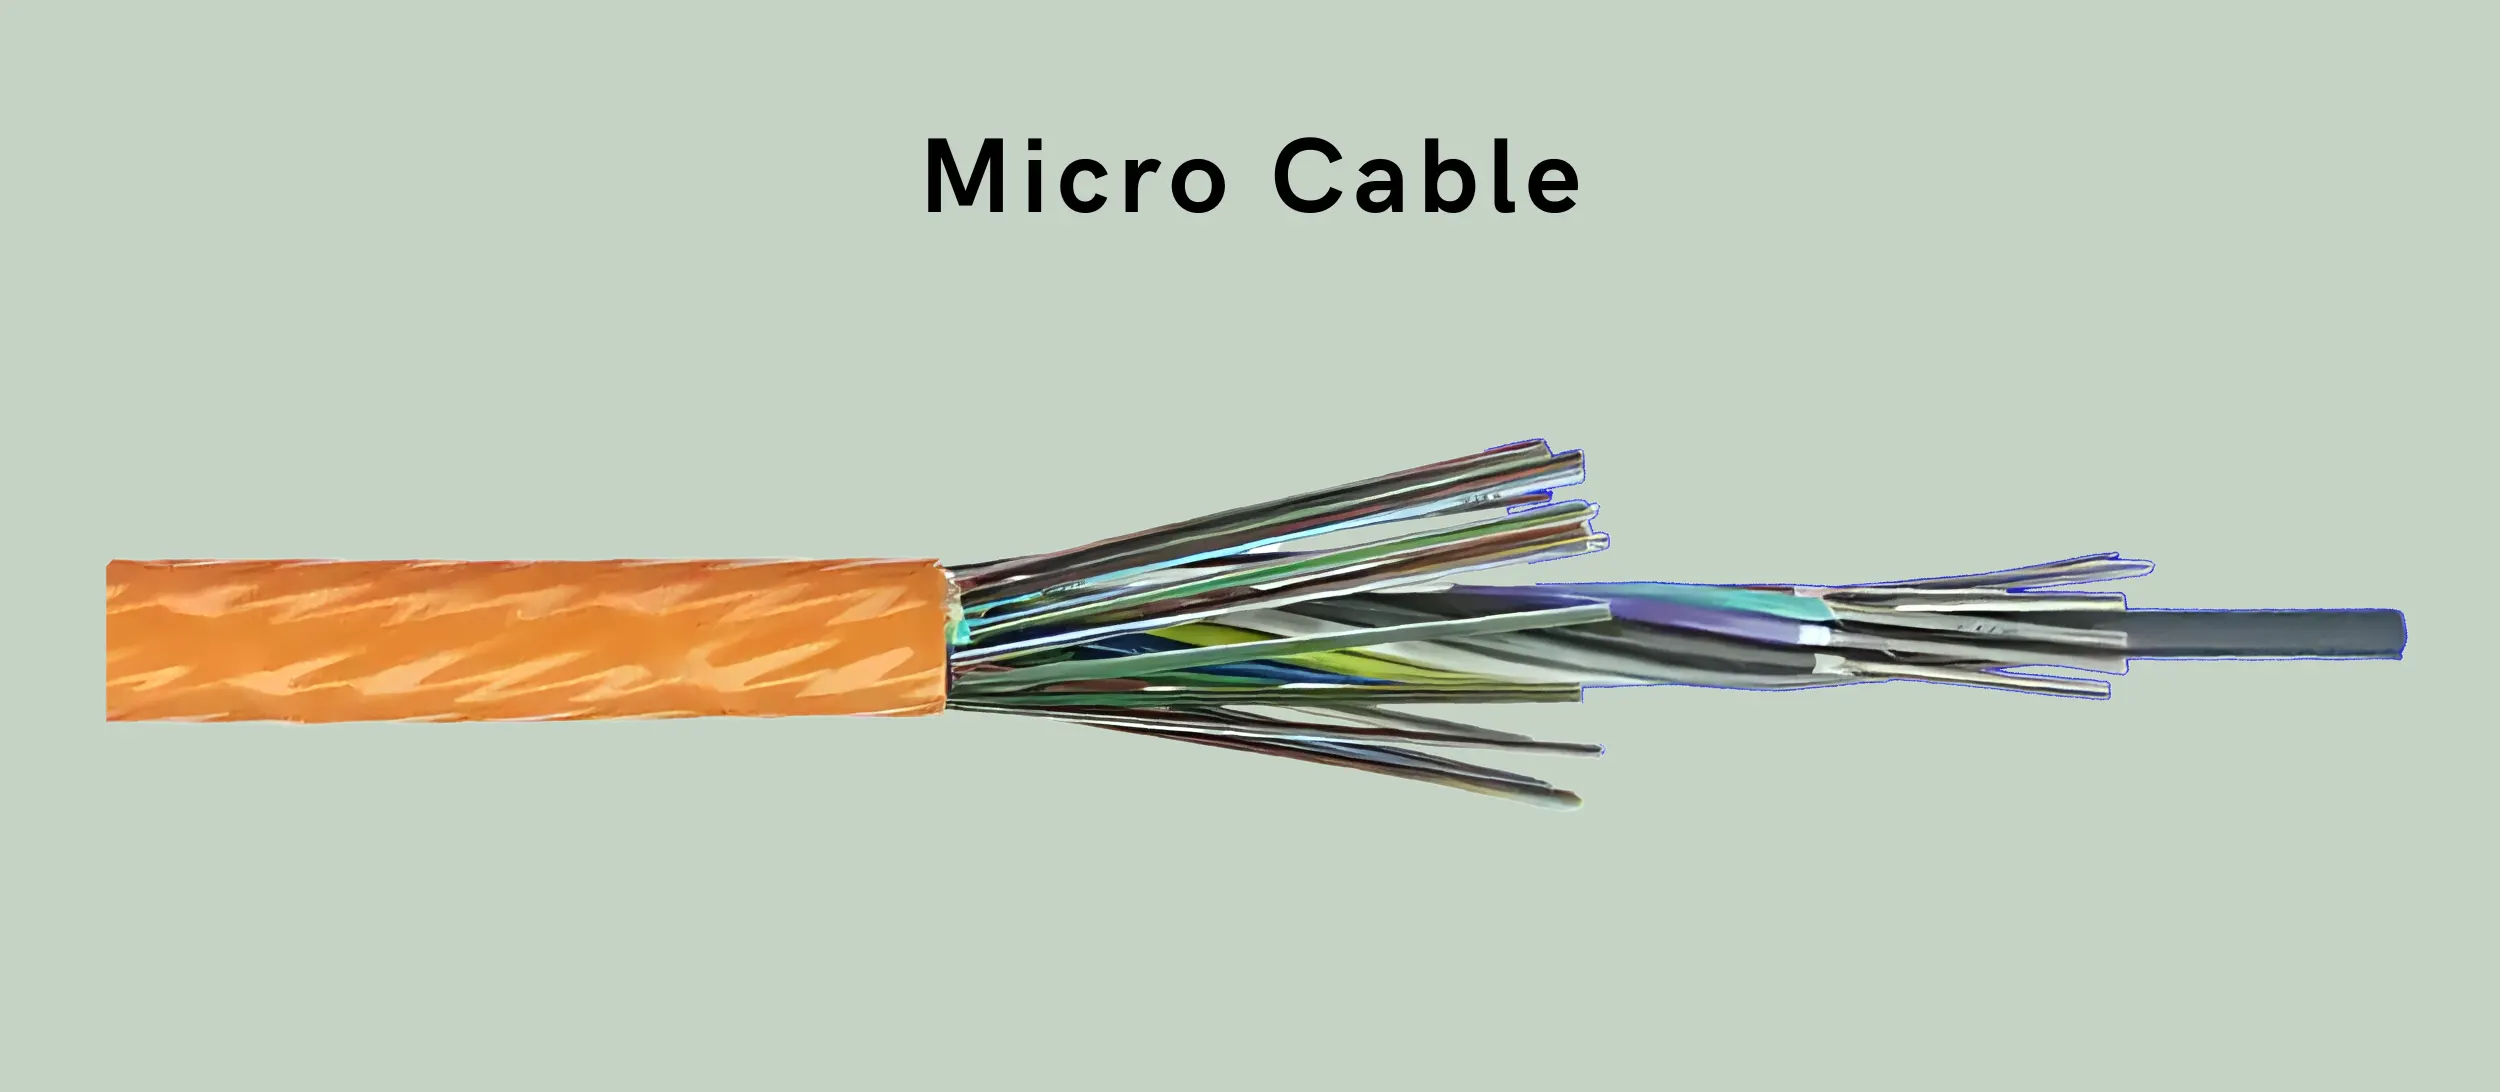 Fiber optic micro cable